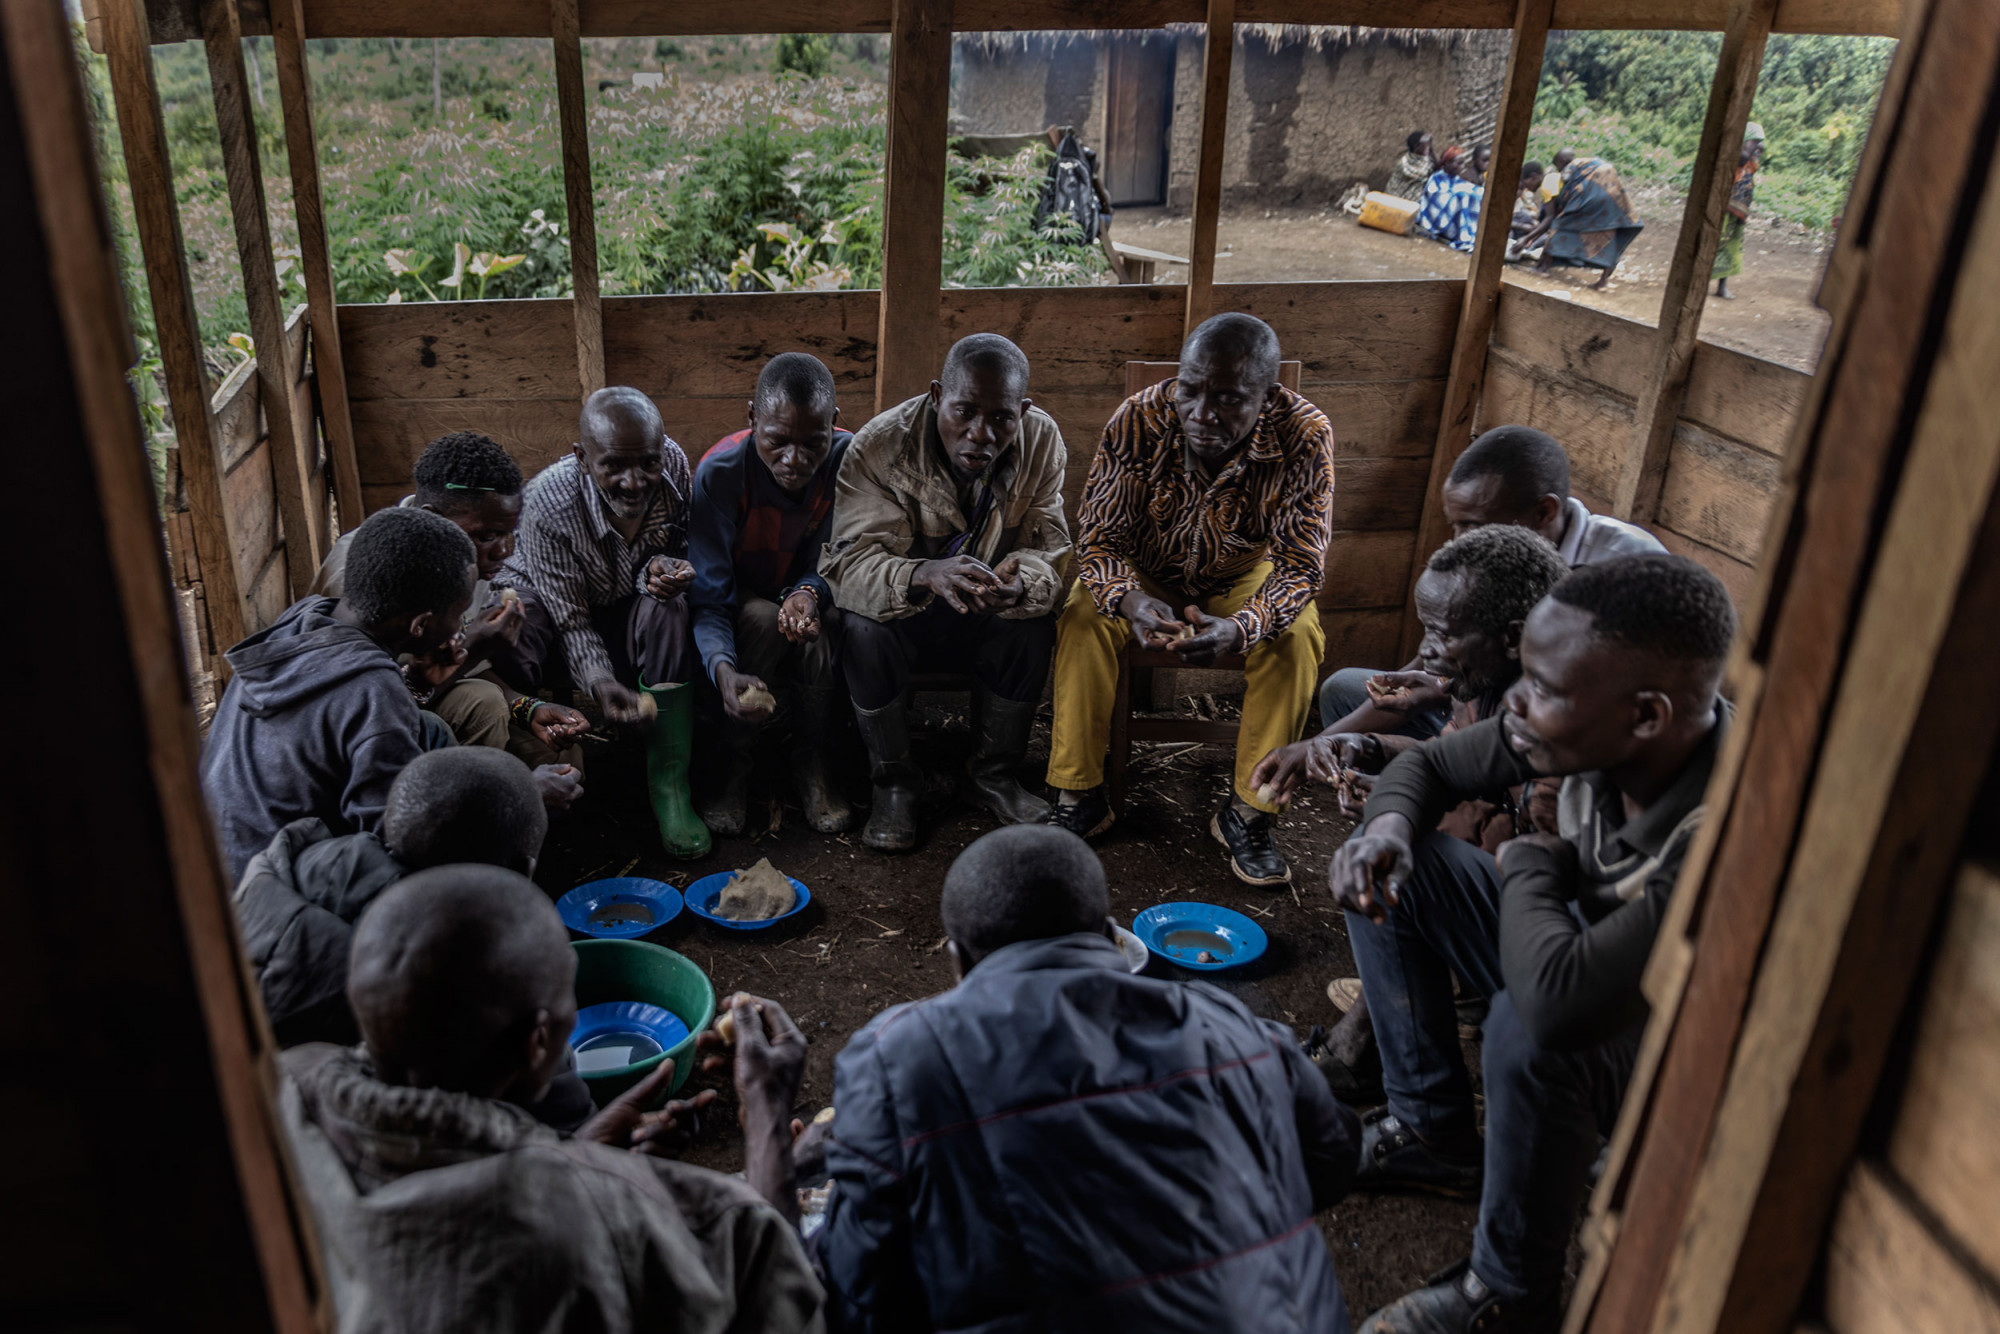 Bugamanda, parc national de Kahuzi-Biega, 3 septembre 2021. Les anciens de la communauté Batwa se réunissent autour du chef de village pour discuter de la situation du village. © Guerchom Ndebo pour la Fondation Carmignac.